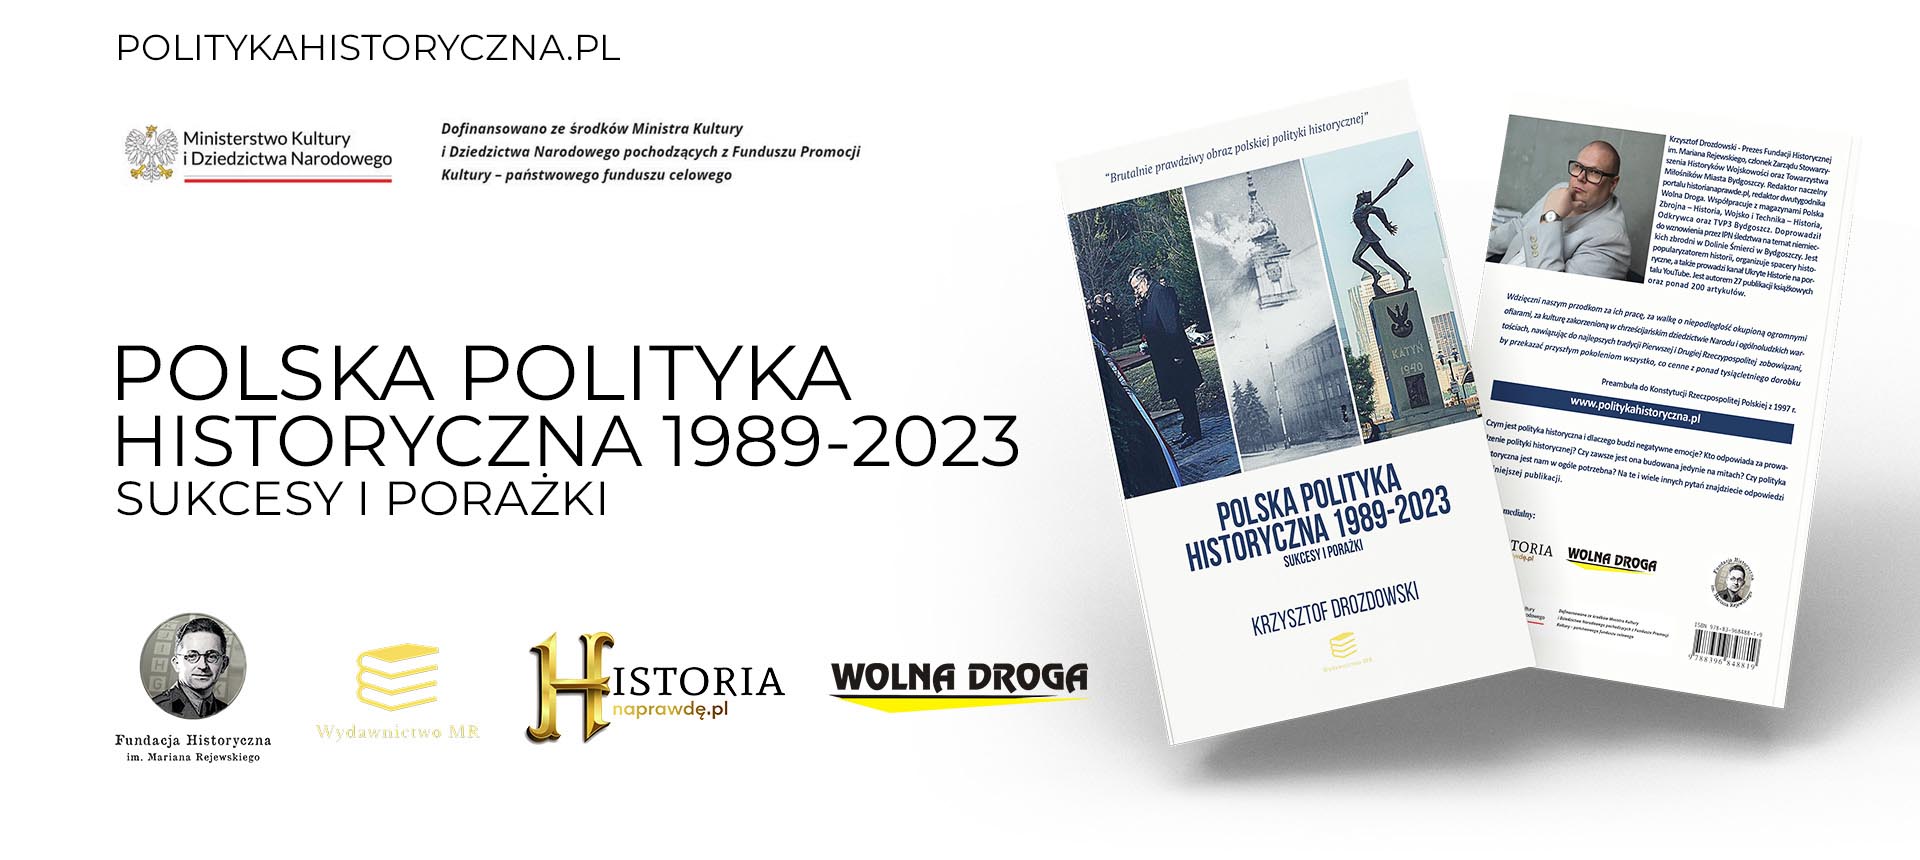 Wkrótce nowa publikacja! “Polska polityka historyczna 1989-2023. Sukcesy i porażki”.